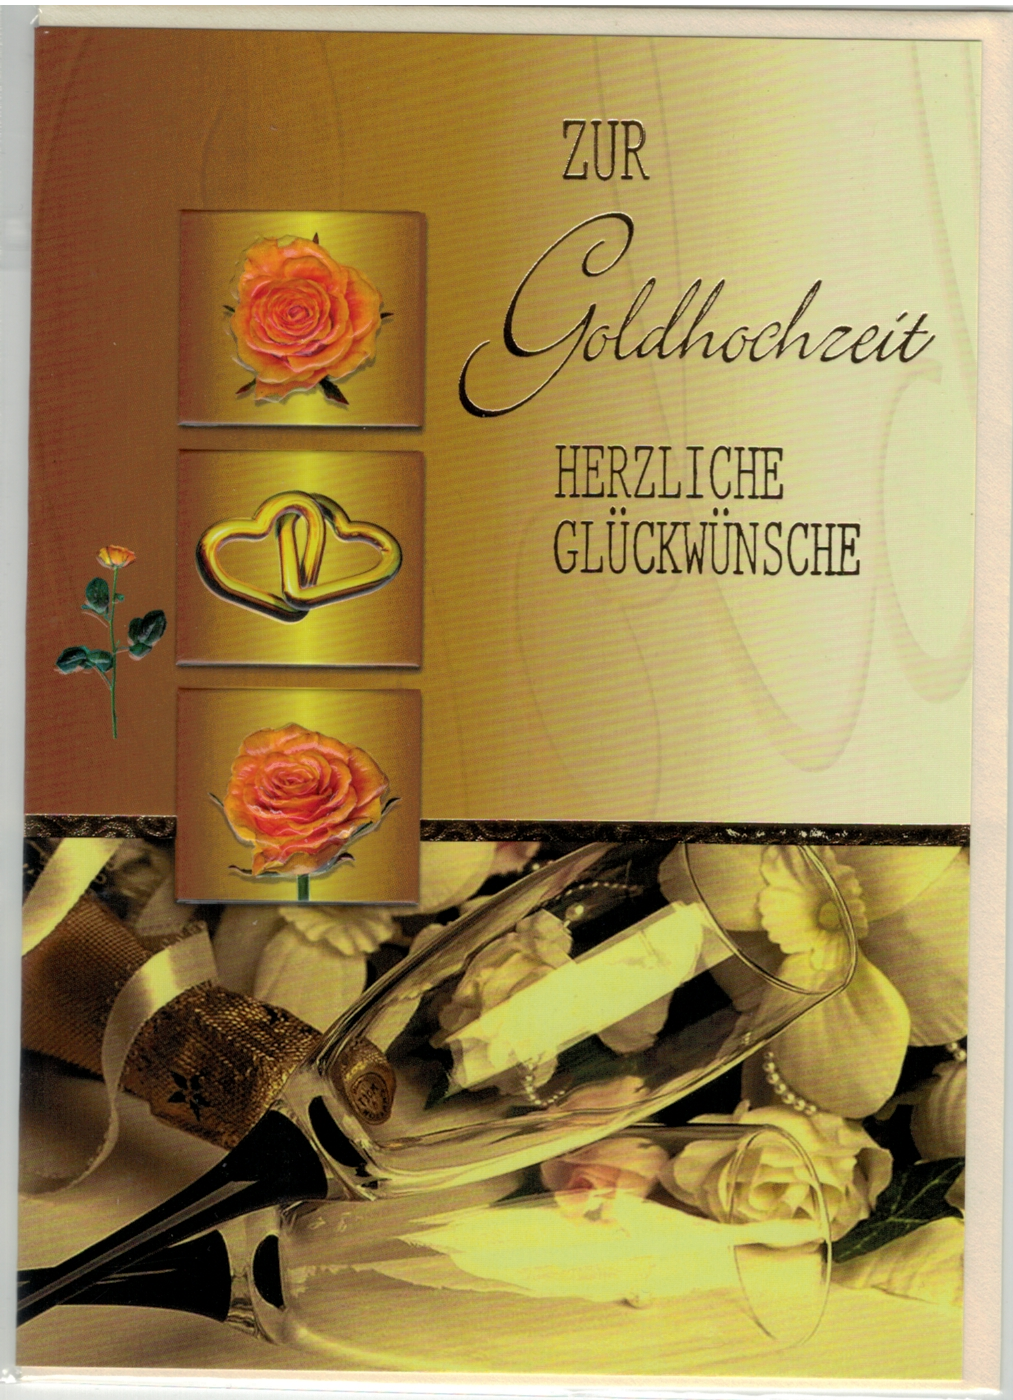 Glückwunschkarte mit Umschlag  "Goldhochzeit"  mit Gläsern und lachsfarbenen Rosen